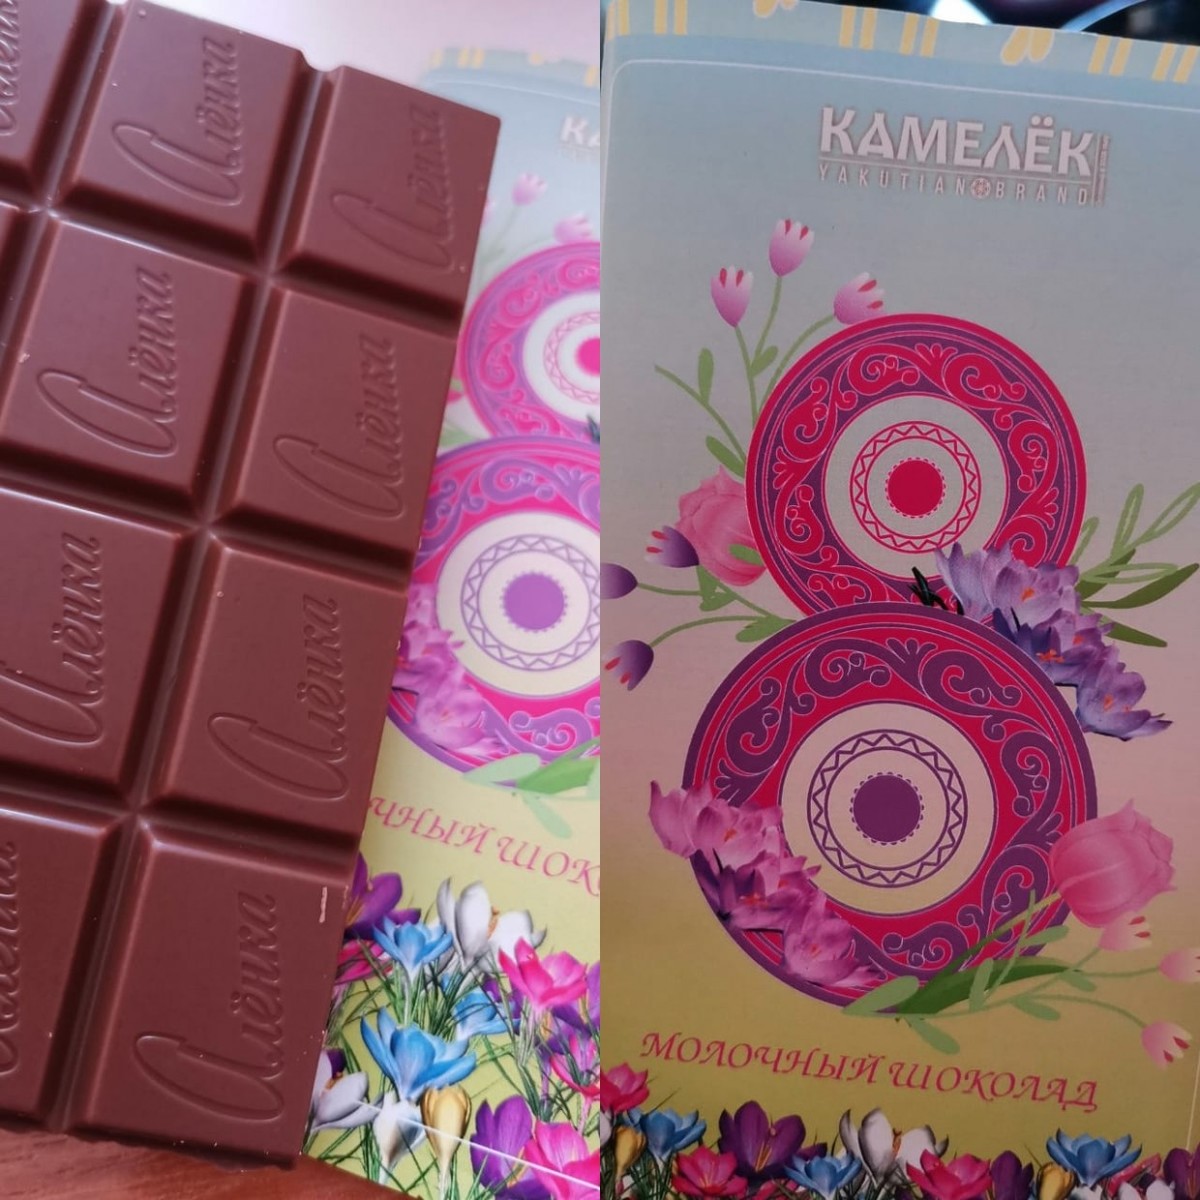 Якутская компания "Камелек" продавала под своим брендом шоколад "Аленка"